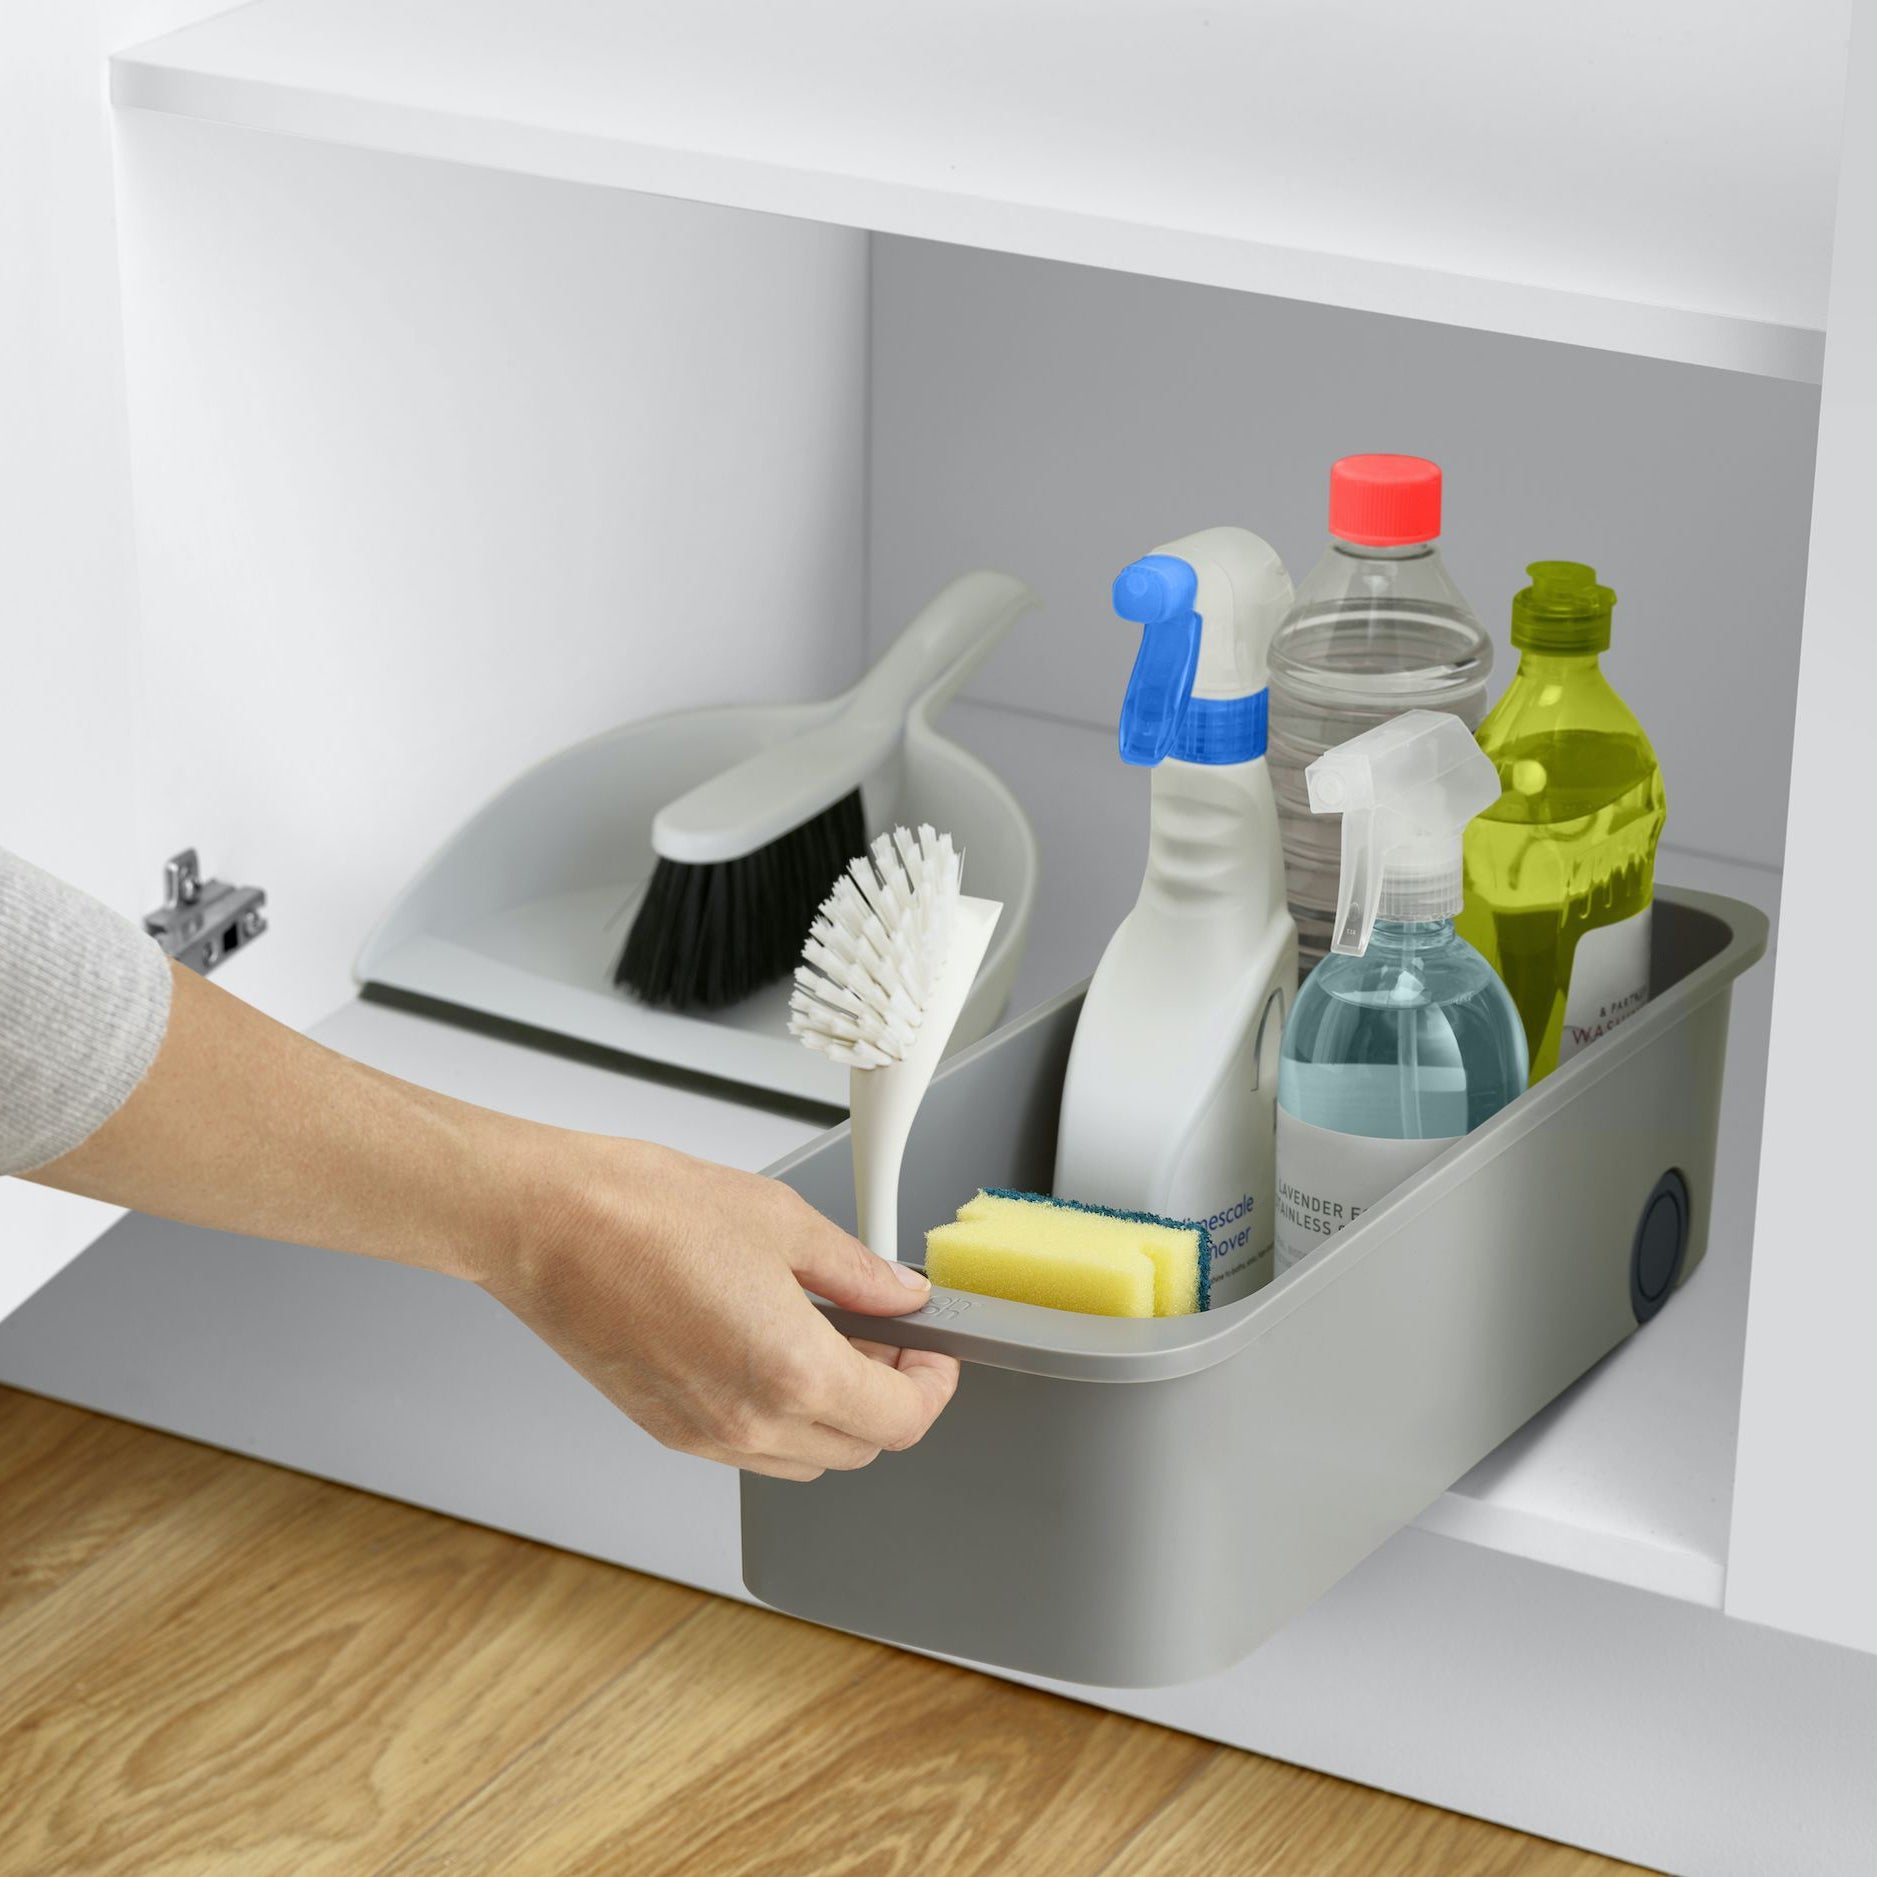 Keukenkast organizer CupboardStore in keukenkast met schoonmaakmiddelen en spons in sponsvakje